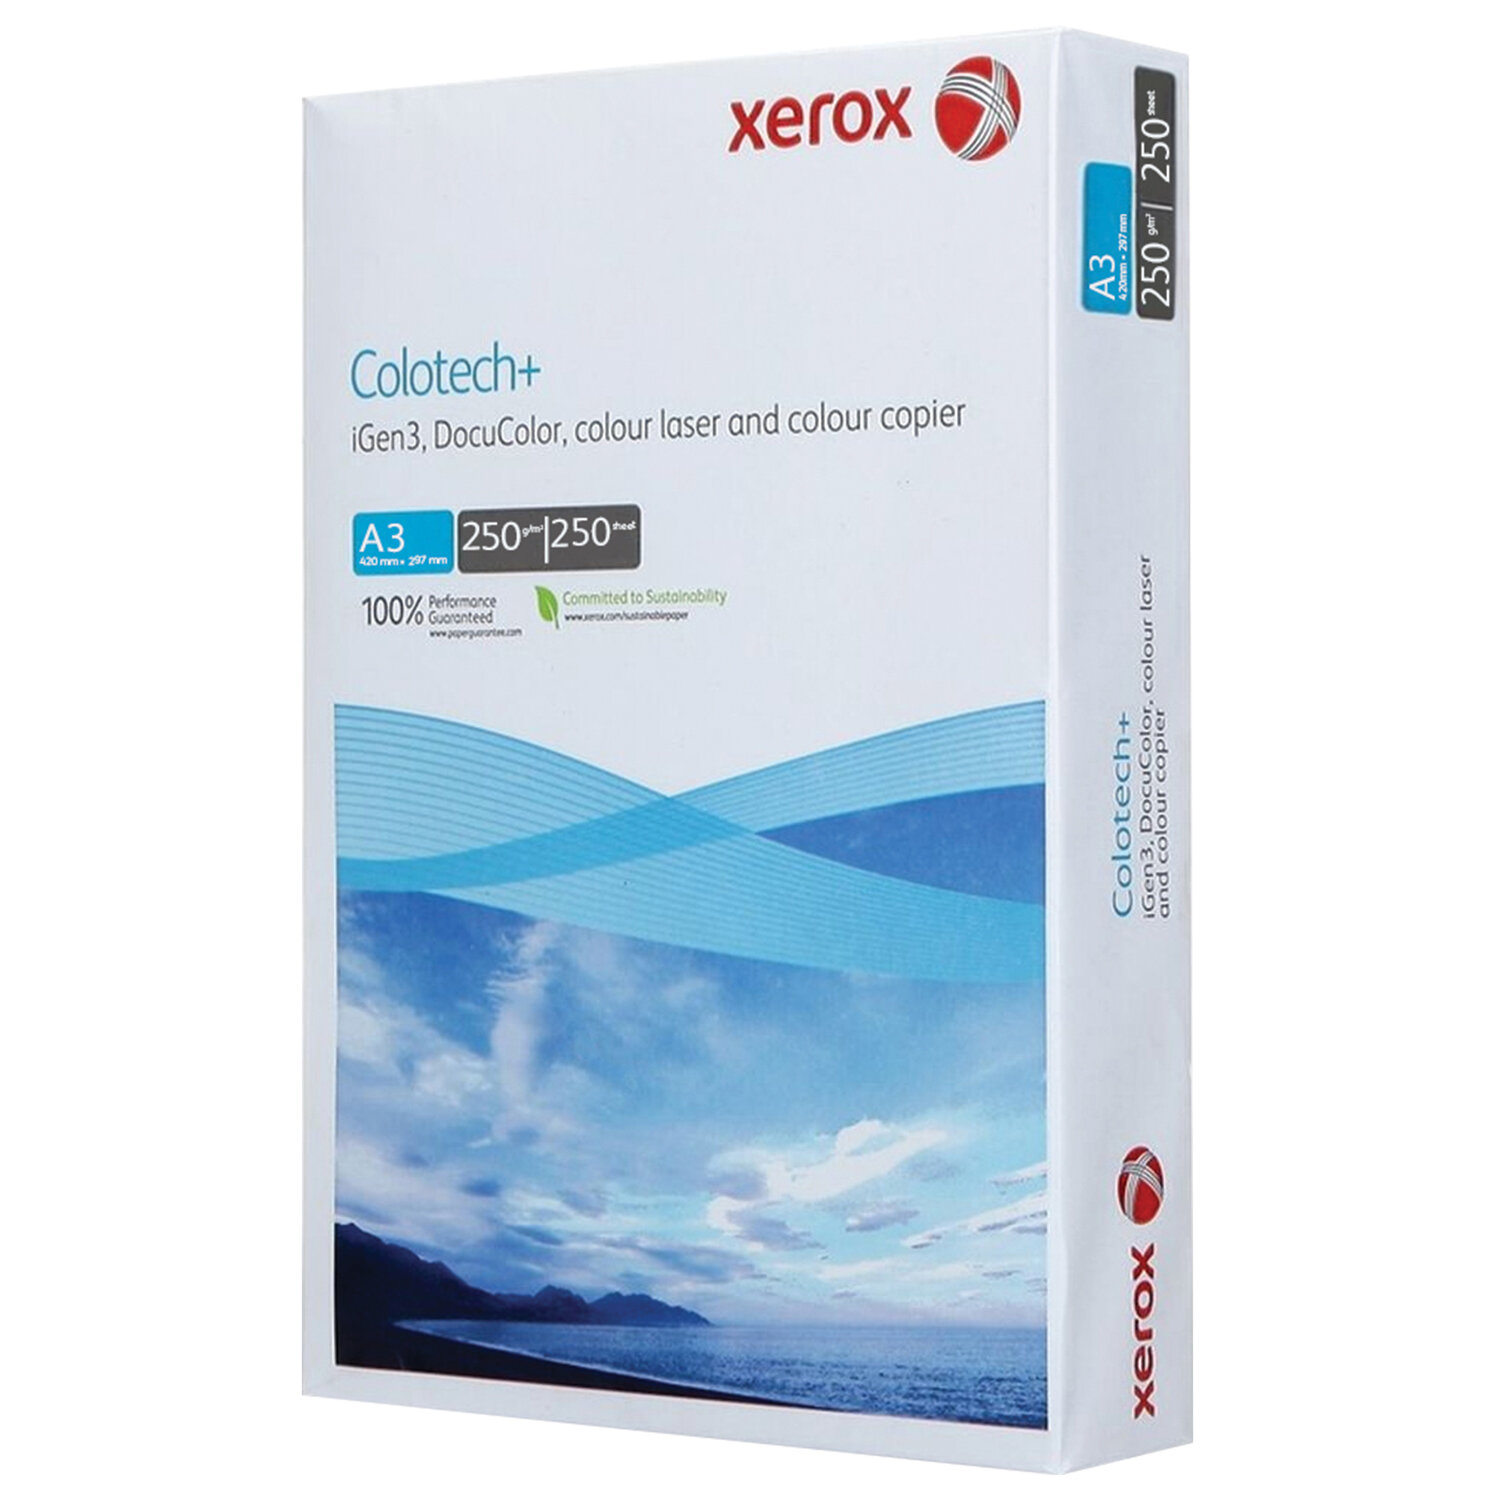      XEROX COLOTECH+ Blue, 3, 250 /2, 250 ., 161% CIE, 003R94672